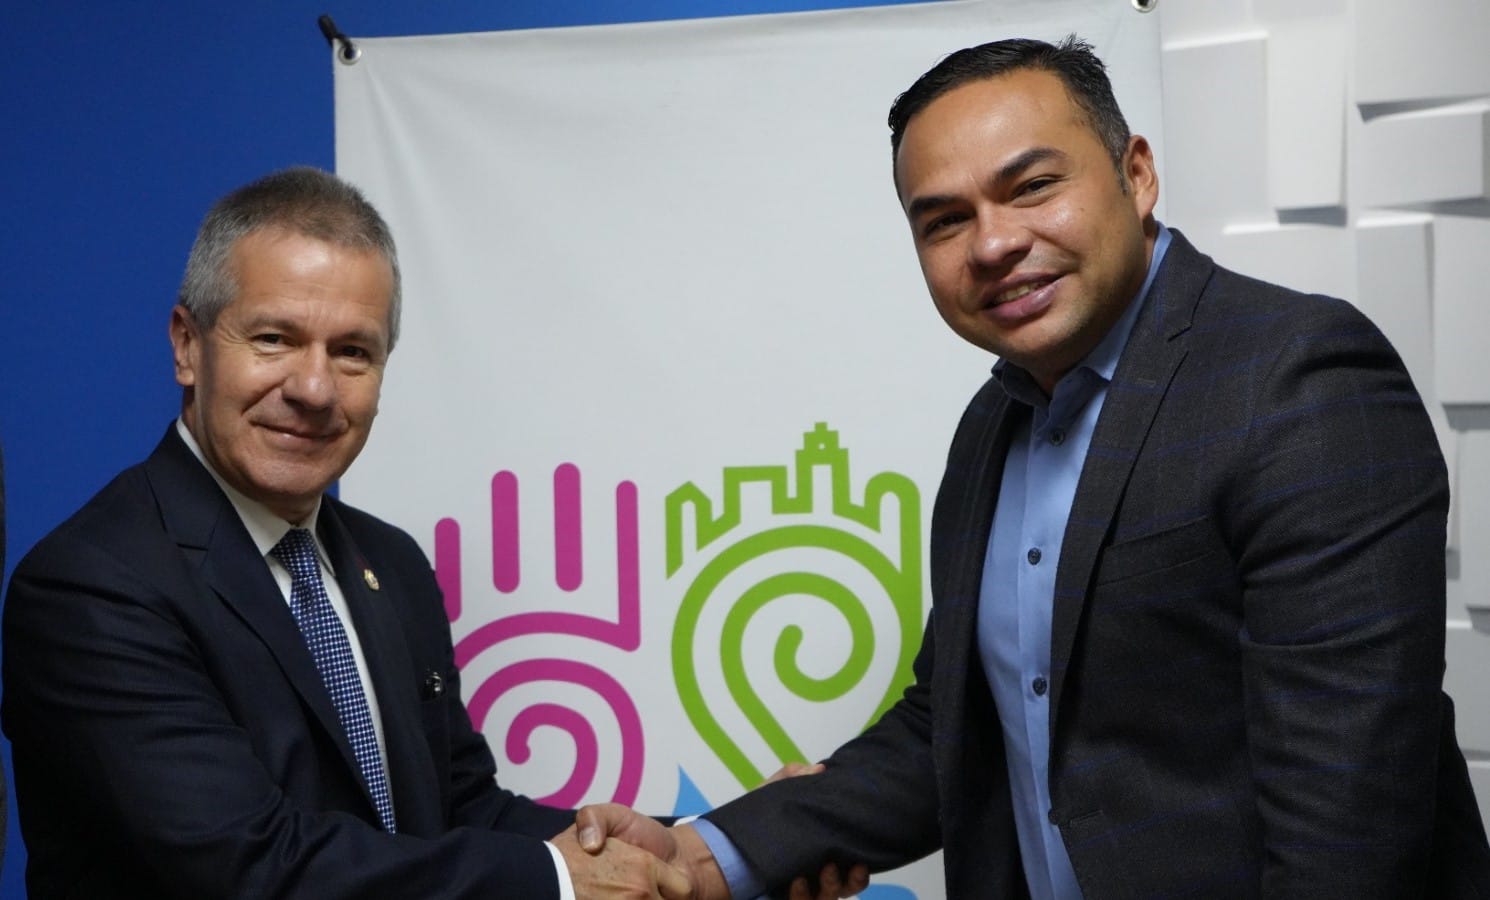 Sr. Luis Bernardo Benjumea; Director Ejecutivo de BASC Colombia y el Sr. Sneyder Alfonso Manzur Arrieta, Superintendente de Vigilancia y Seguridad Privada